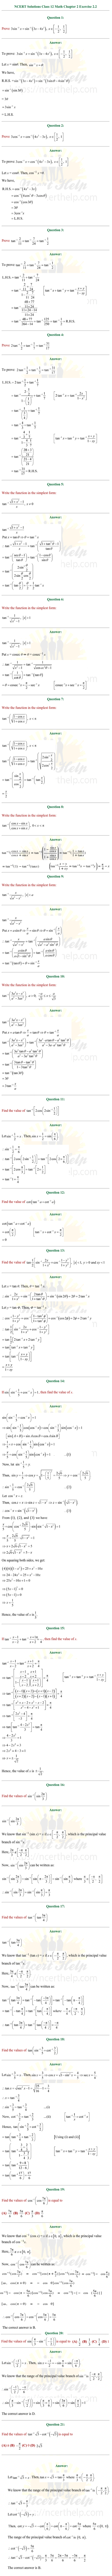 ex.2.2 Class 12 Math Chapter 2 ncert solutions